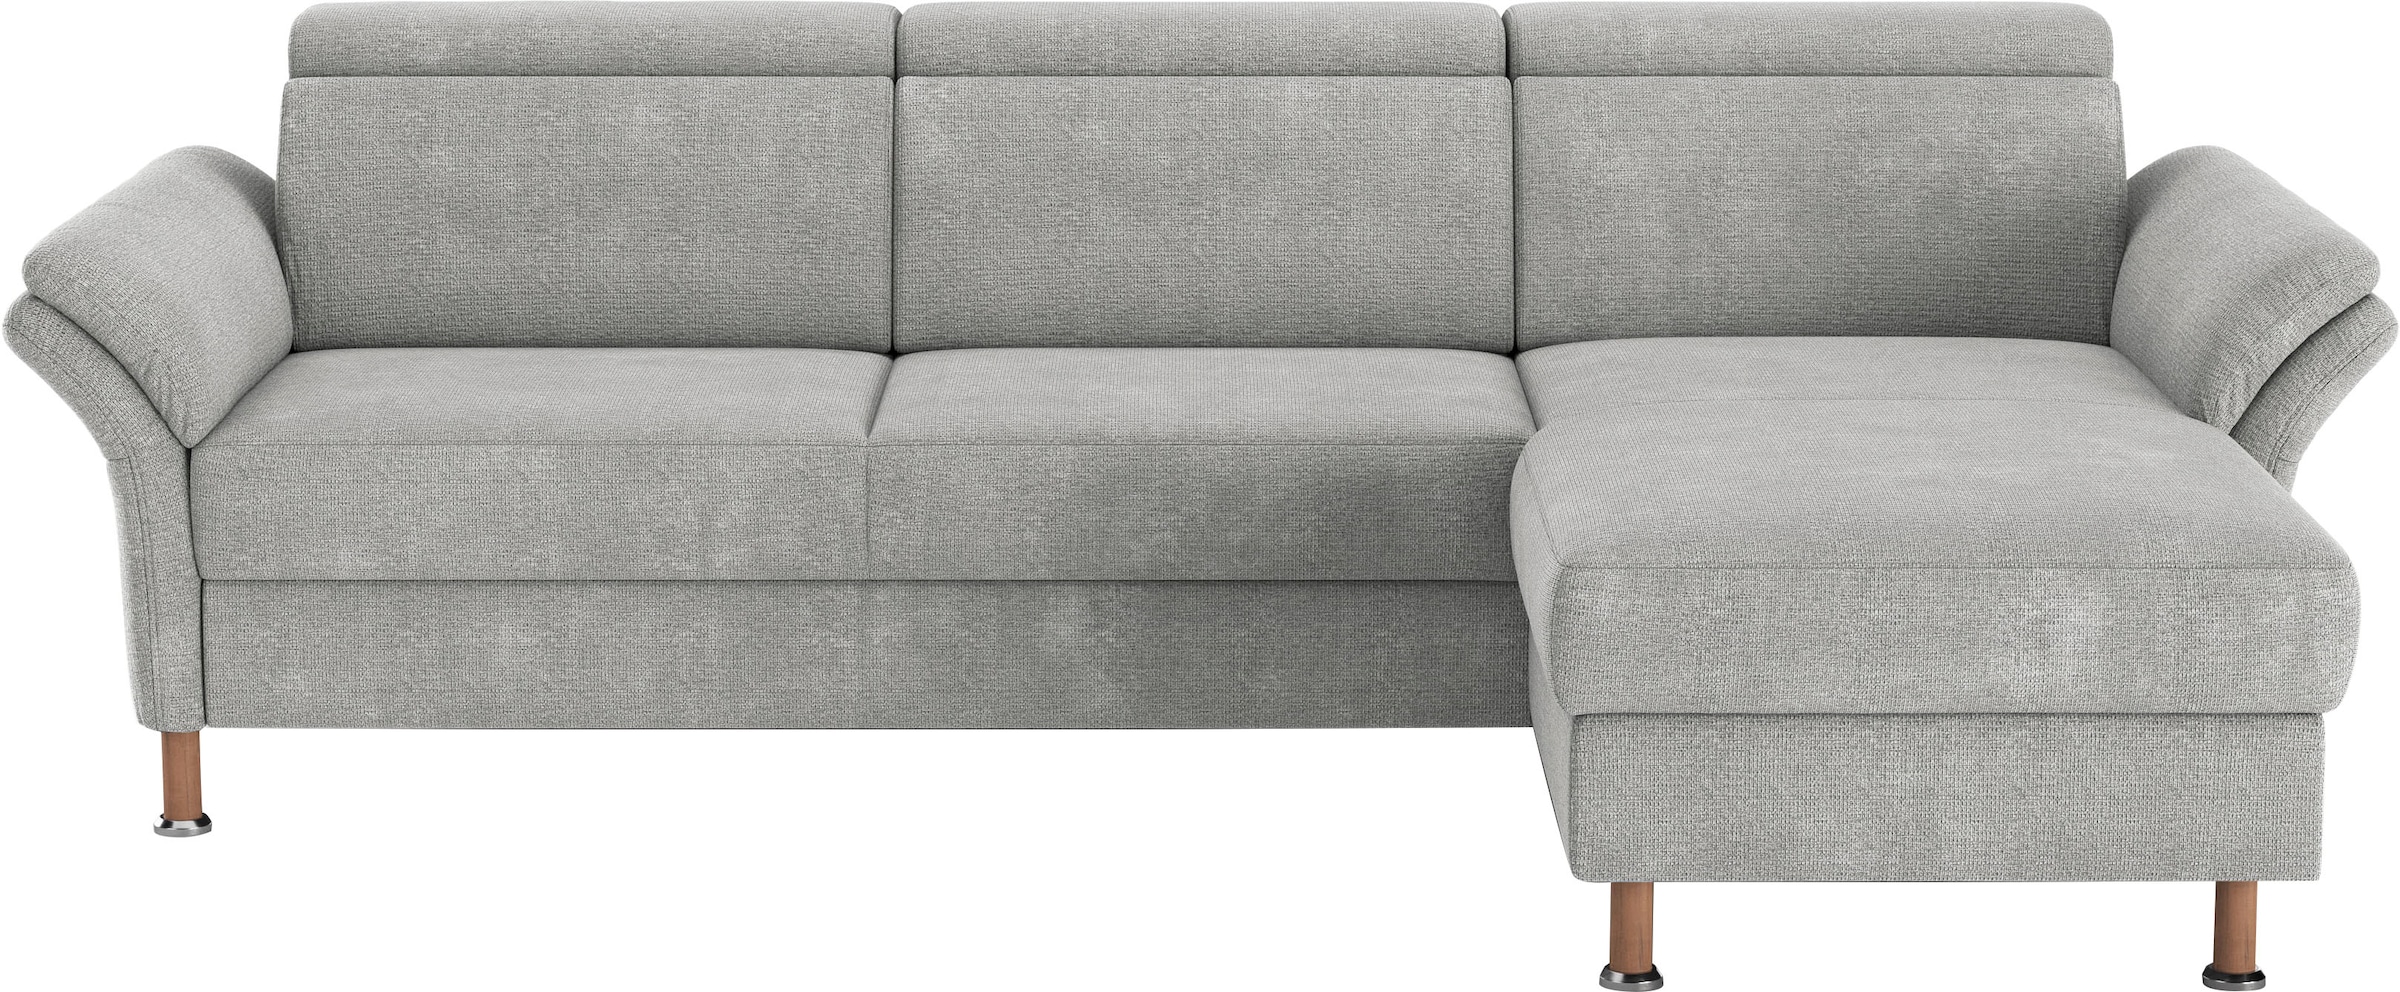 Ecksofa »Calypso L-Form«, mit motorischen Funktionen im Sofa und Recamiere